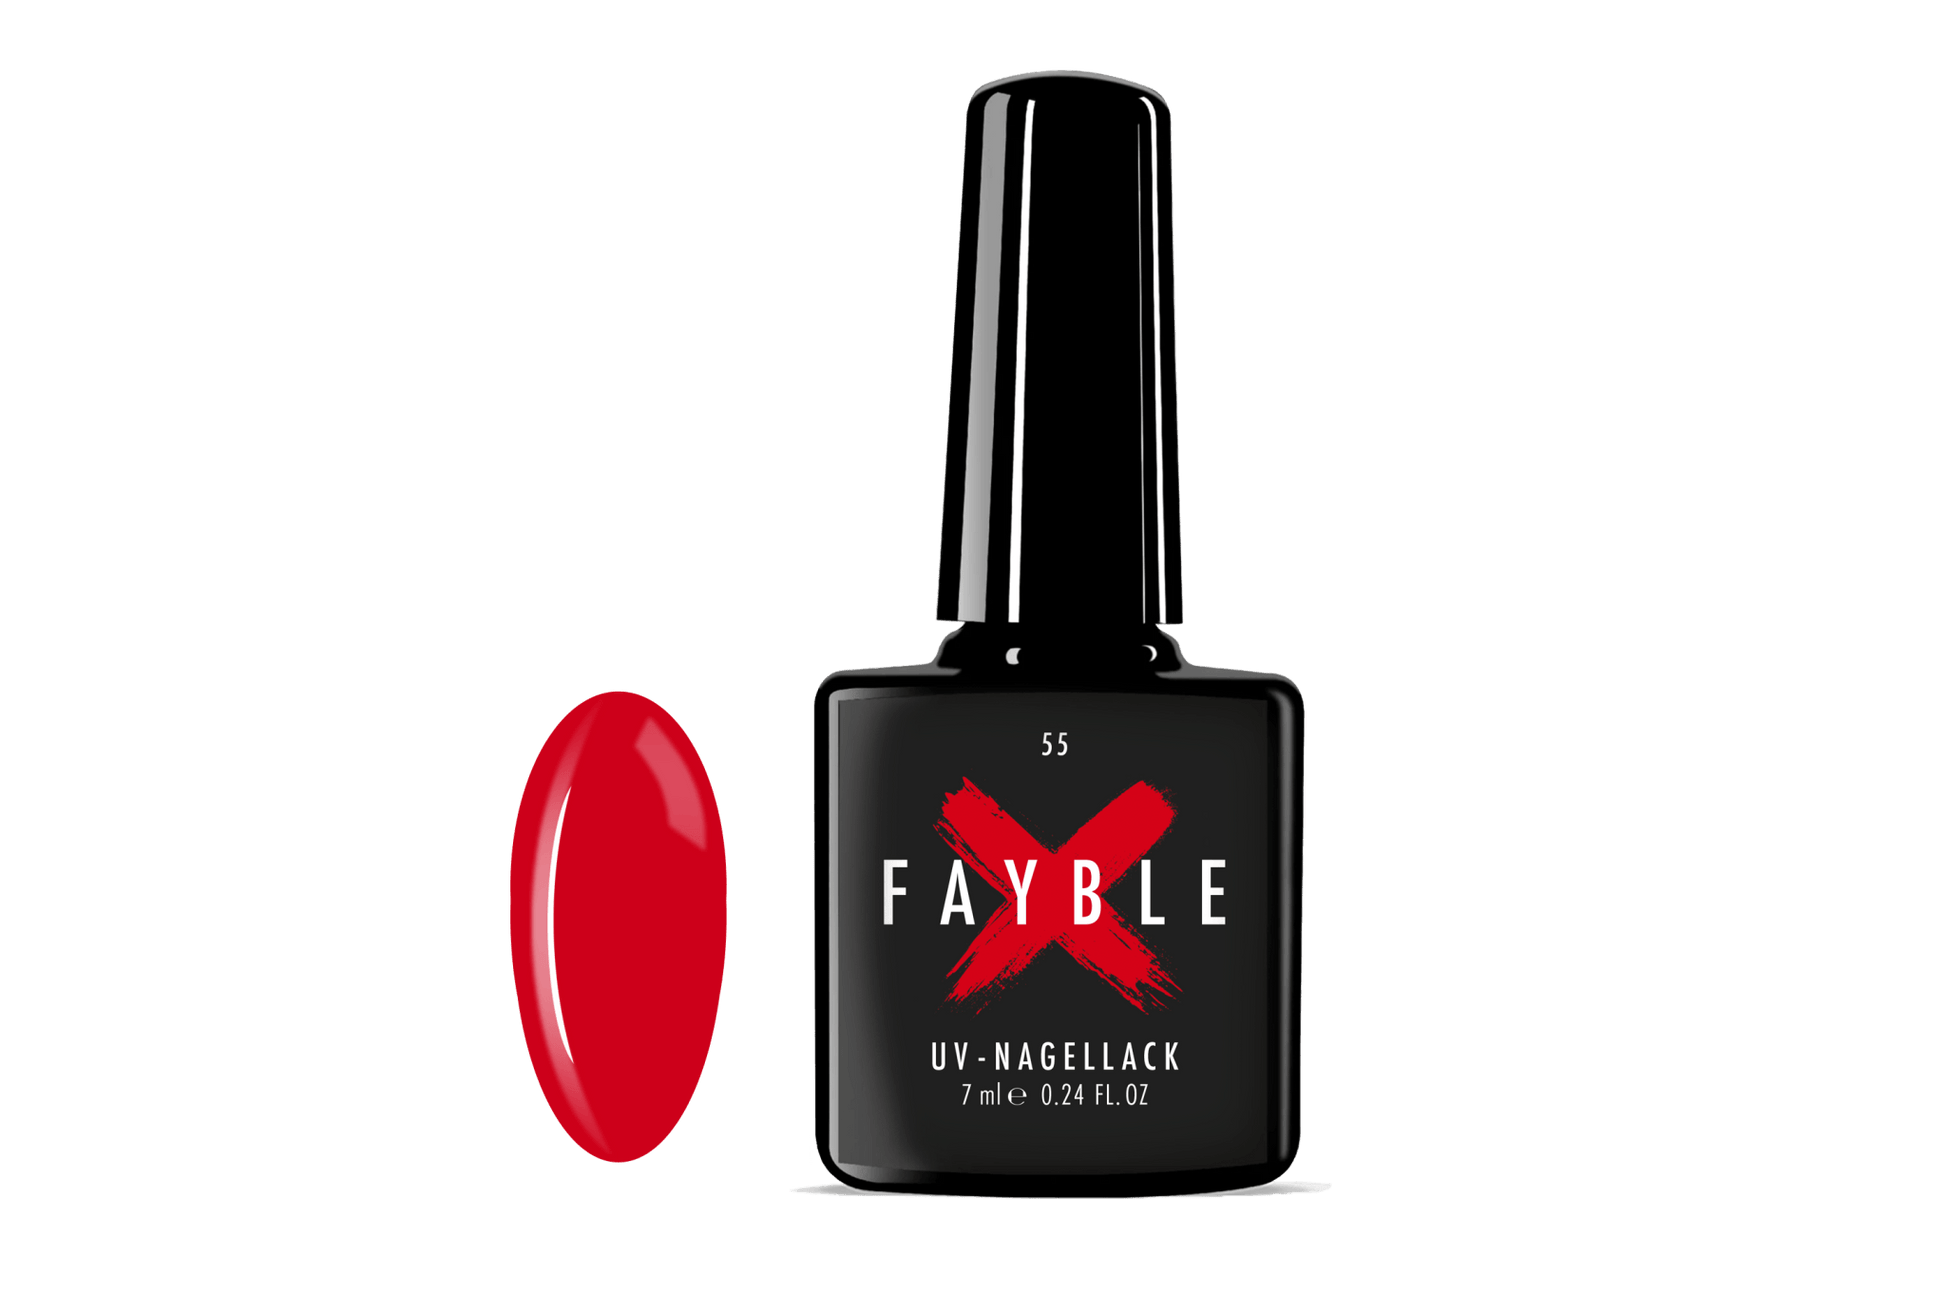 FAYBLE | UV-Nagellack Nr. 55 - FAYBLE